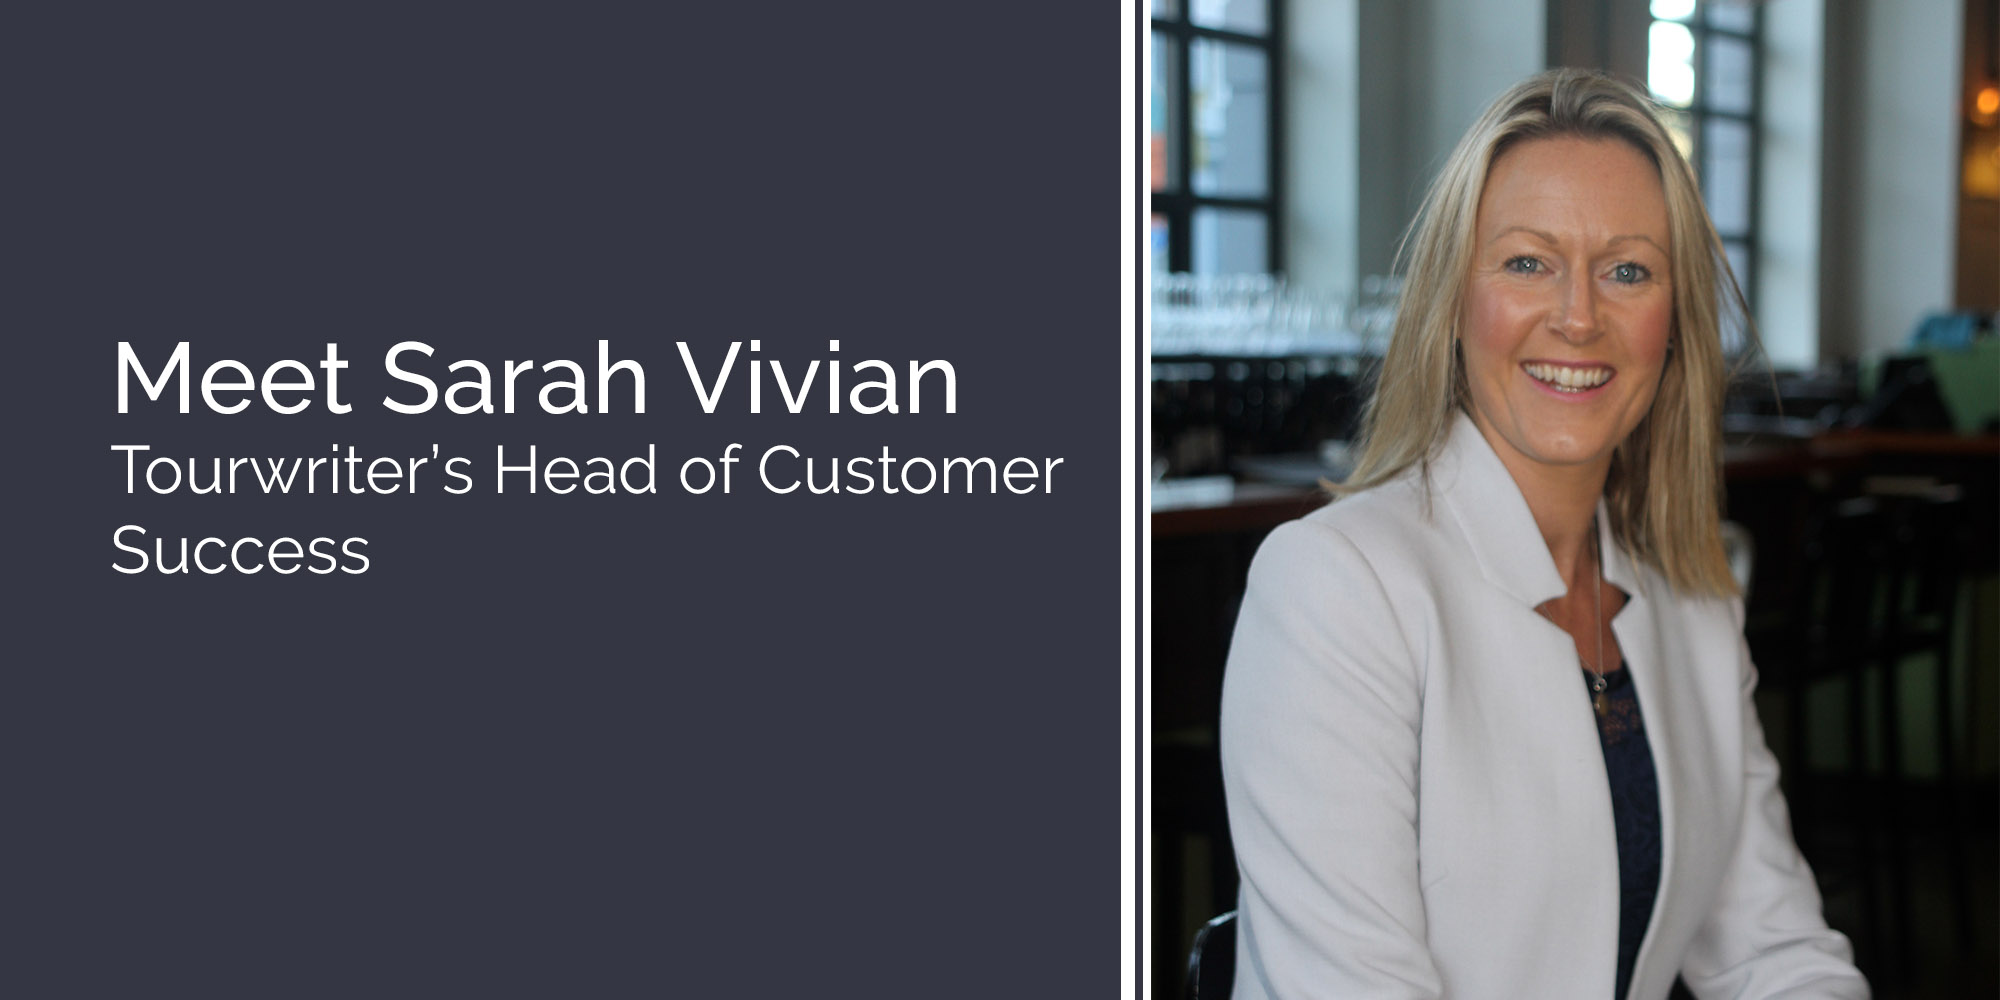 Meet Sarah Vivian and Customer Success at Tourwriter